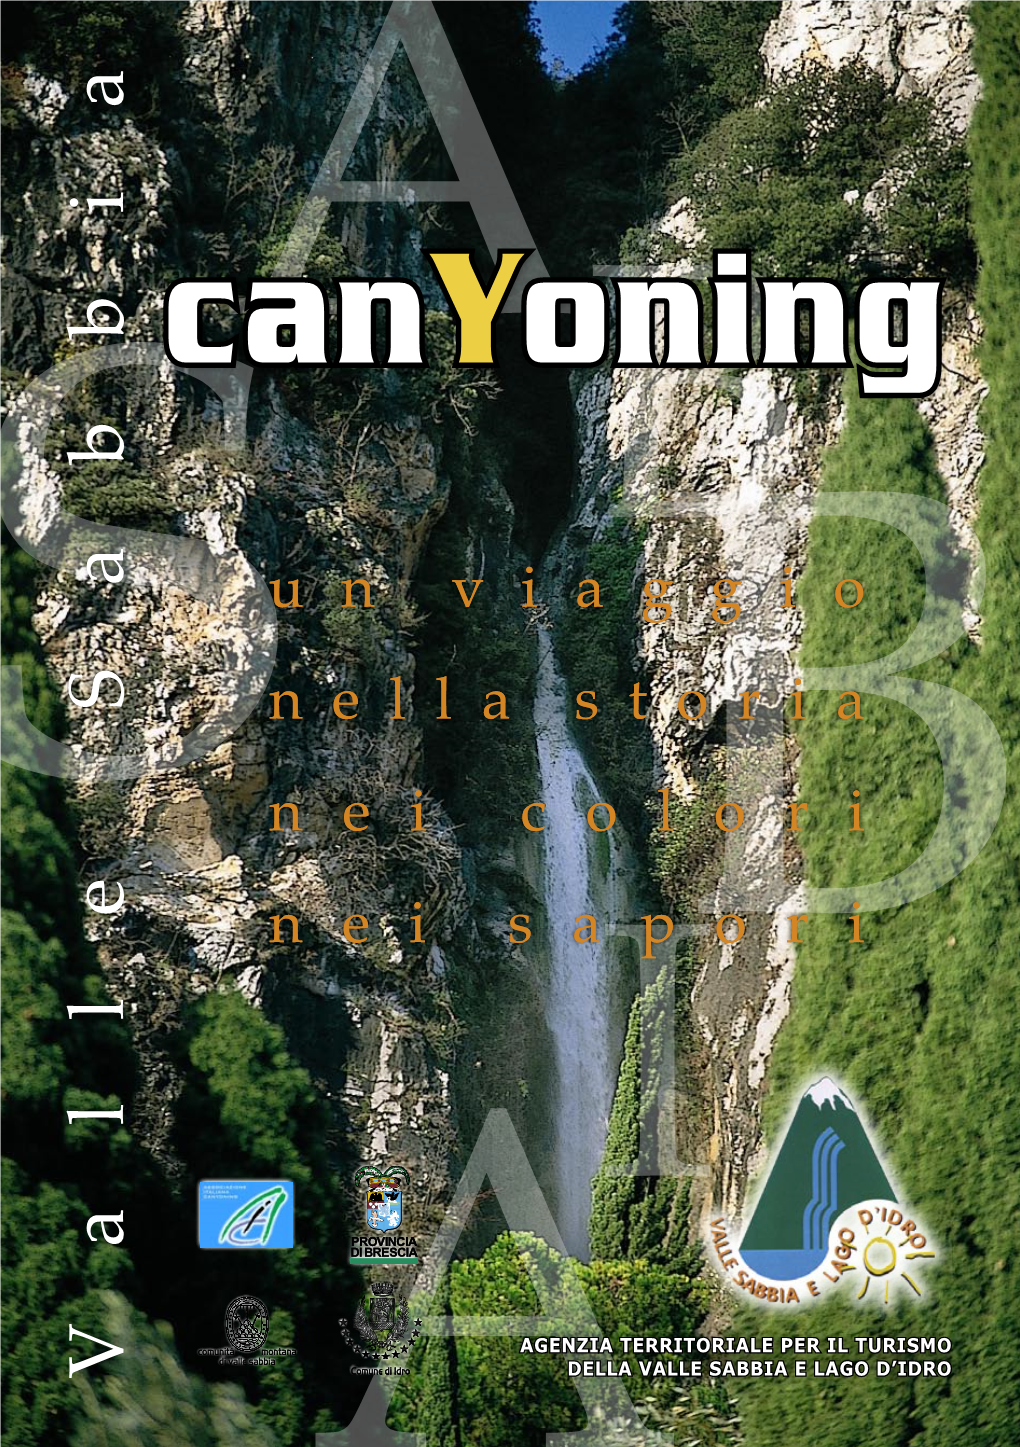 Canyoning (AIC), Che Promuove La Diffusione Del Torrentismo, Un’Attività Sportiva ﬁnalizzata Alla Percorrenza in Sicurezza Dei Canyon